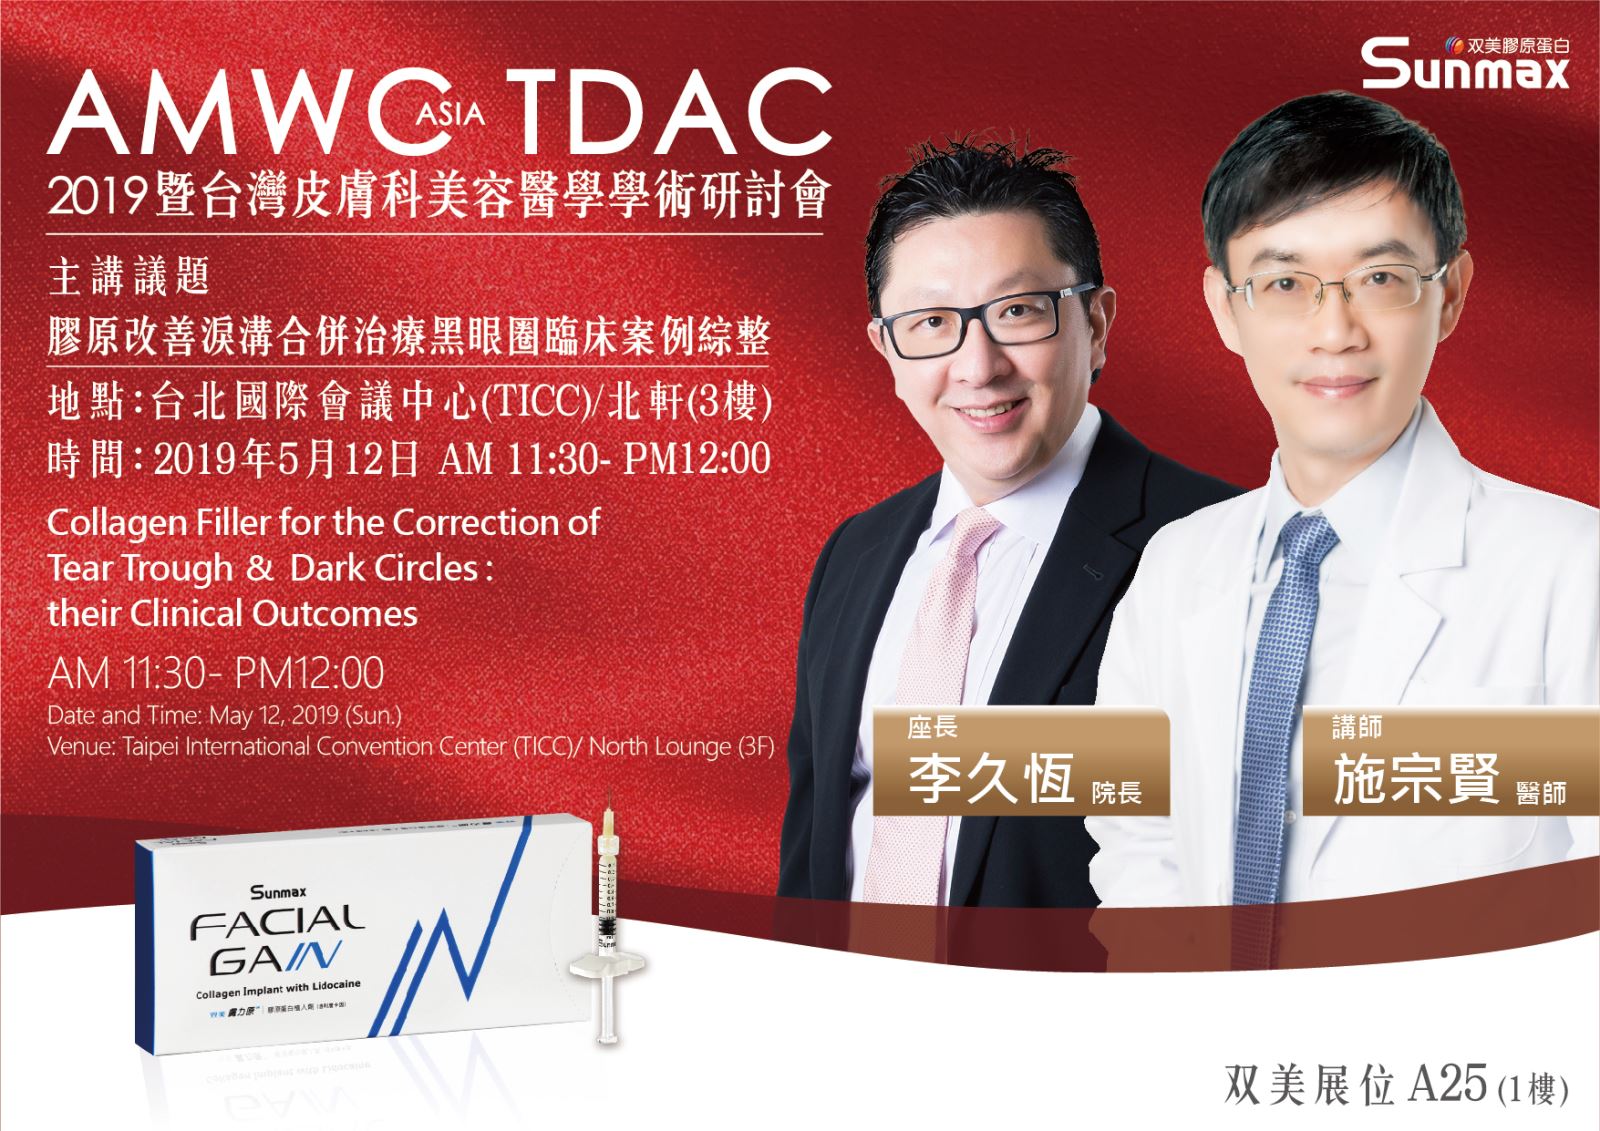 2019AMWC Asia TDAC 暨台灣皮膚科美容醫學學術研討會